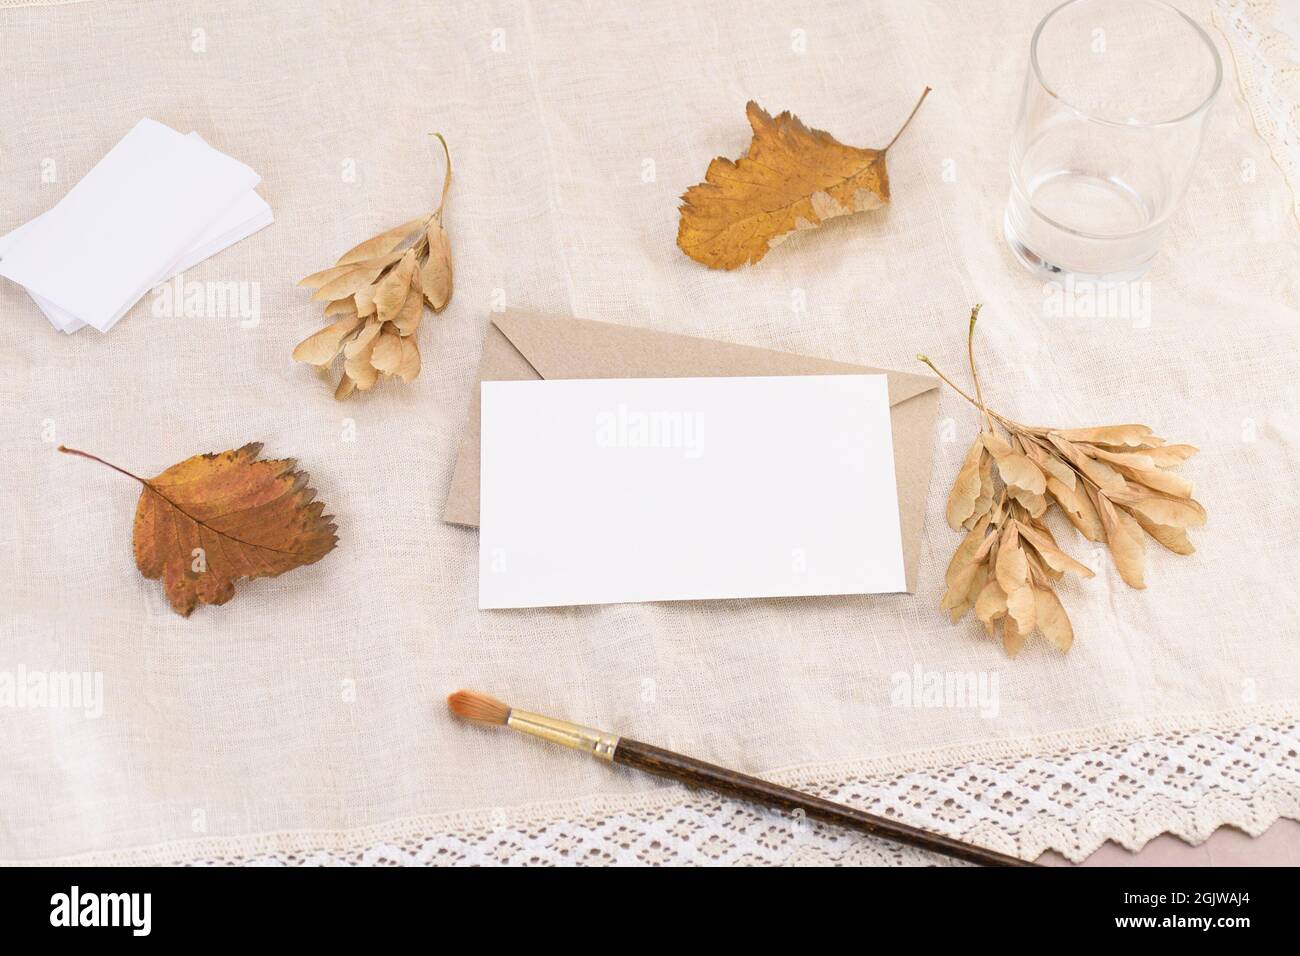 Eine Visitenkarte auf einem Umschlag, einem Brief oder einer Einladung vor dem Hintergrund einer hellen Leinenserviette mit abgefallenen Blättern. Hochzeit Schreibwaren Mockup Stockfoto